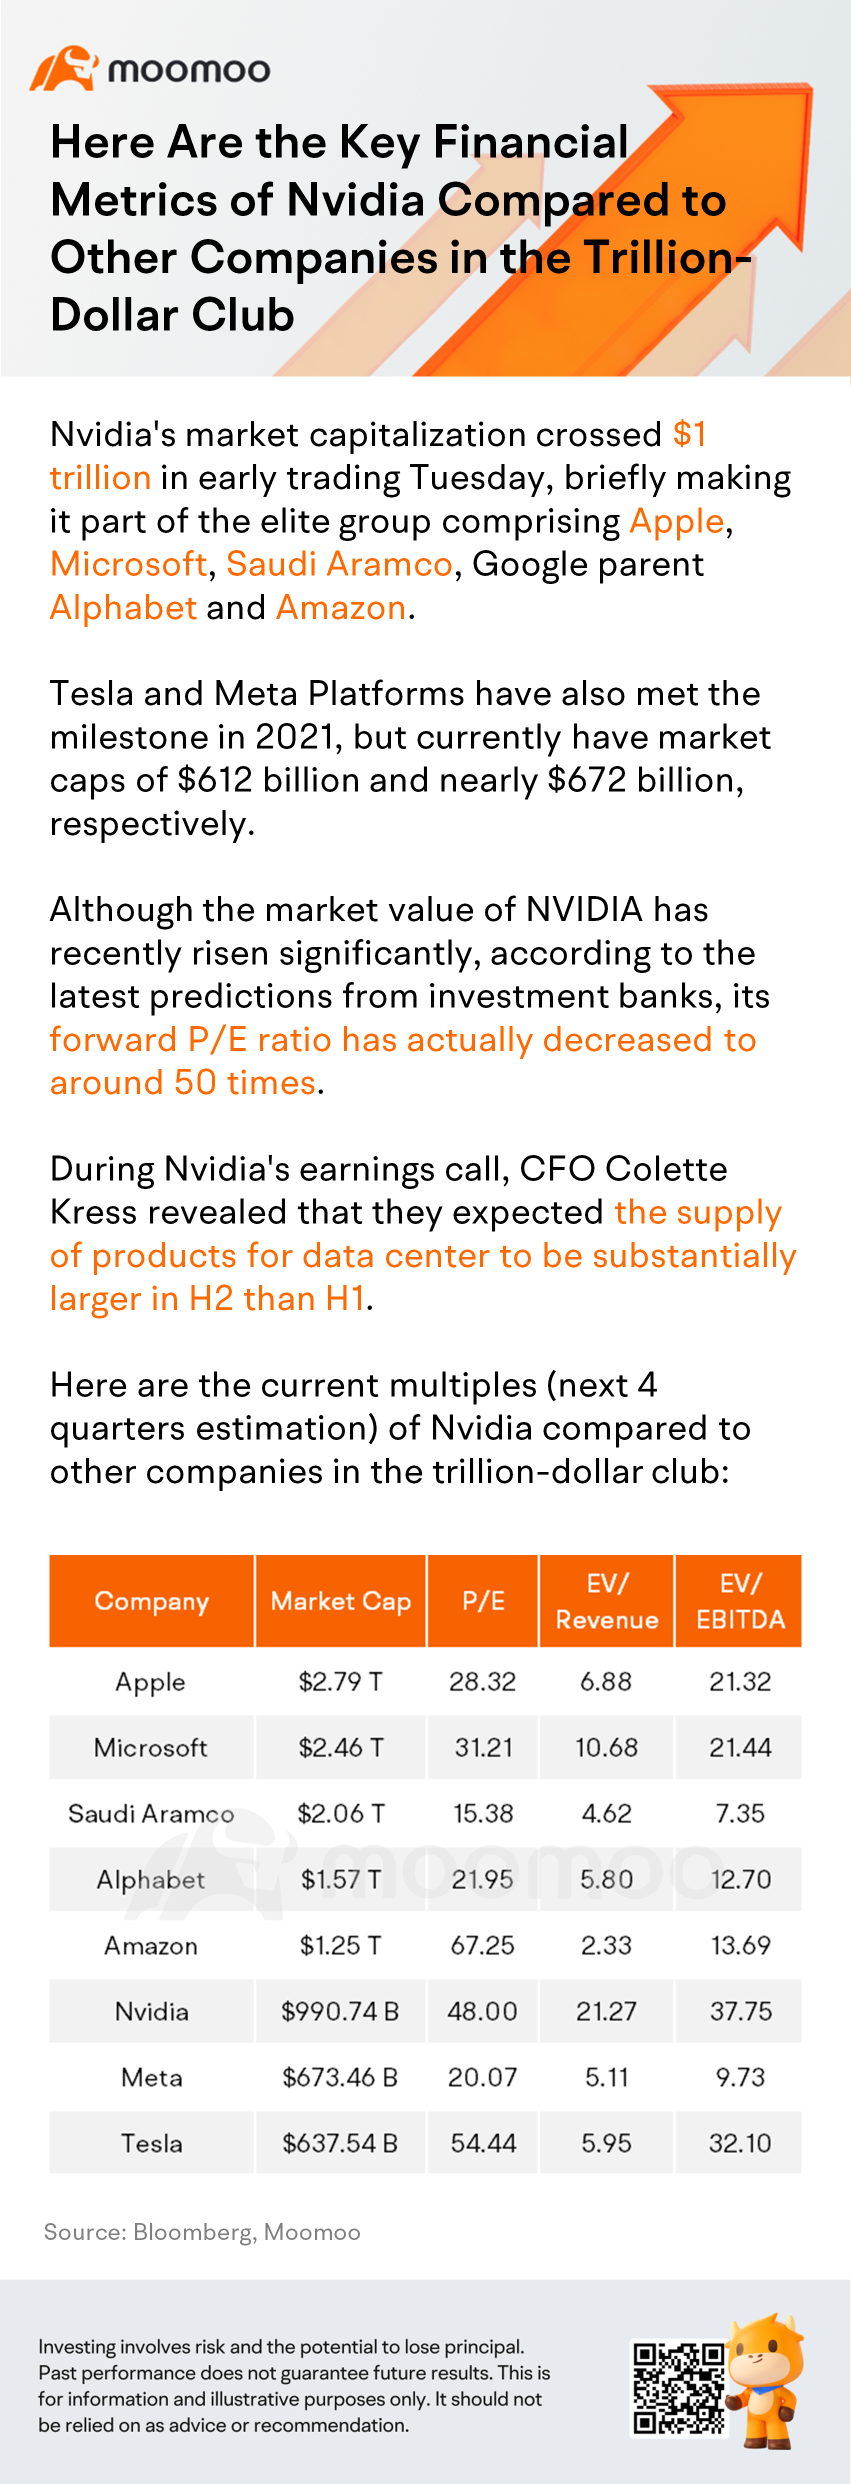 Nvidiaの主な財務指標は、1兆ドルクラブの他の企業と比較して以下のようになっています。